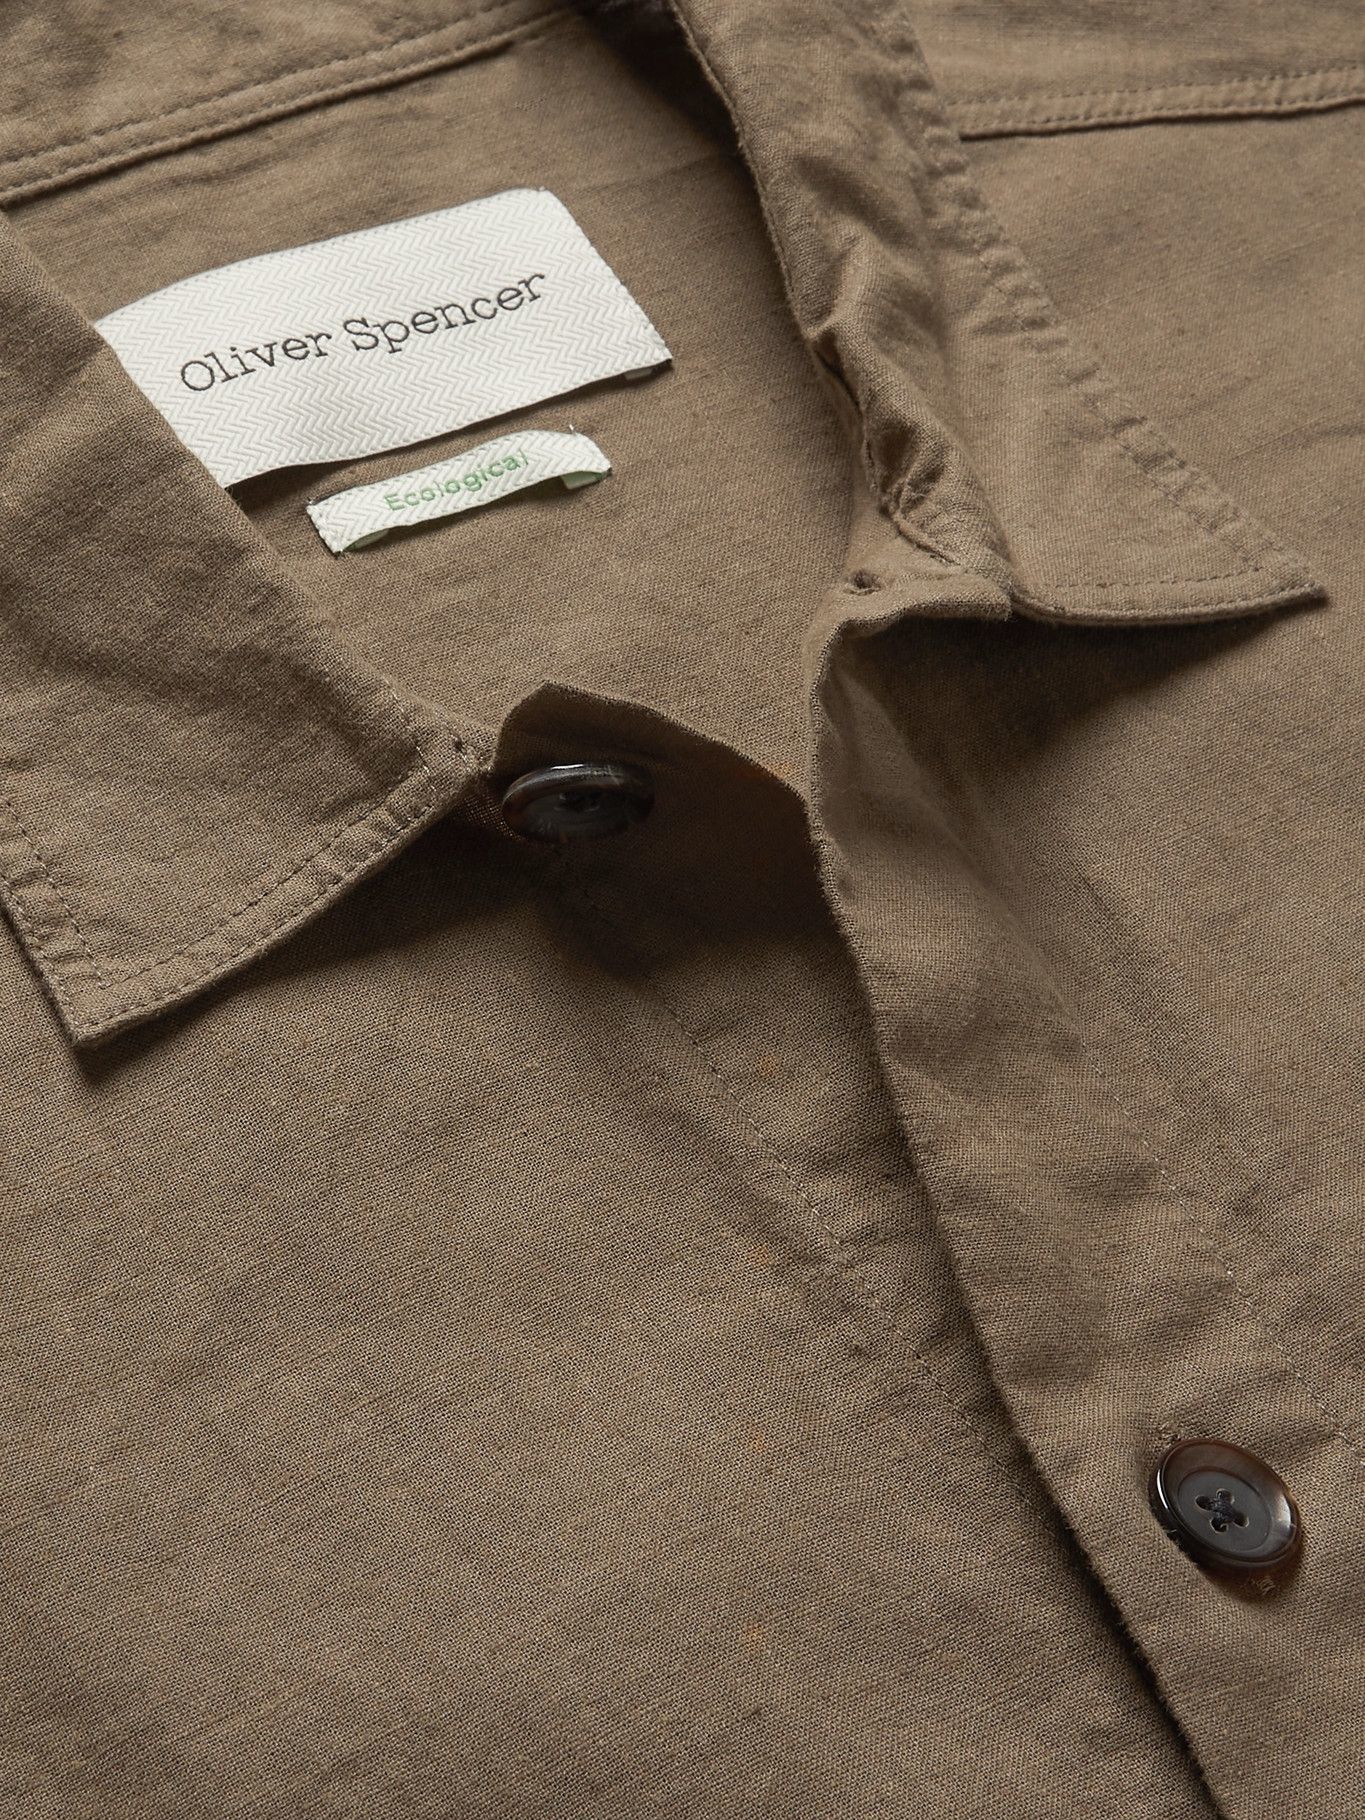 OLIVER SPENCER - Hockney Linen and Cotton-Blend Shirt Jacket - Green